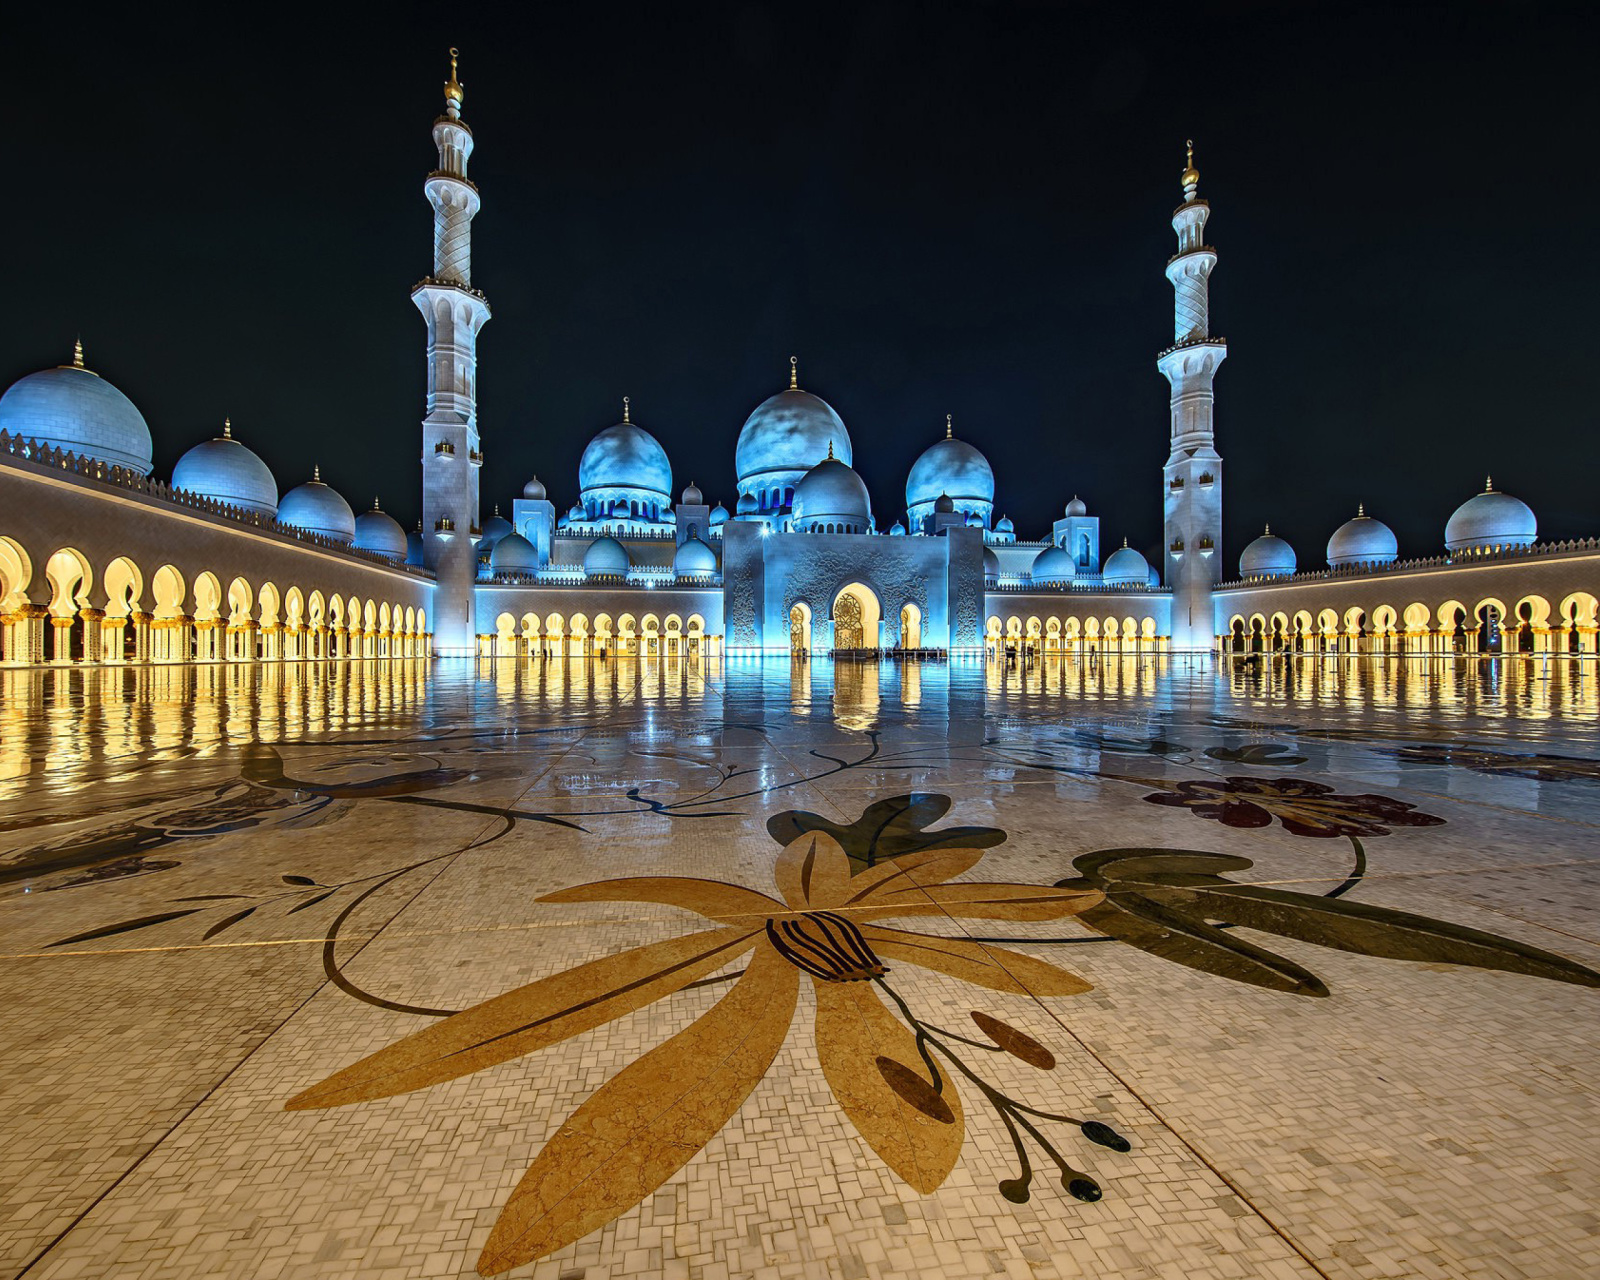 Das Abu Dhabi Islamic Center for Muslims Wallpaper 1600x1280